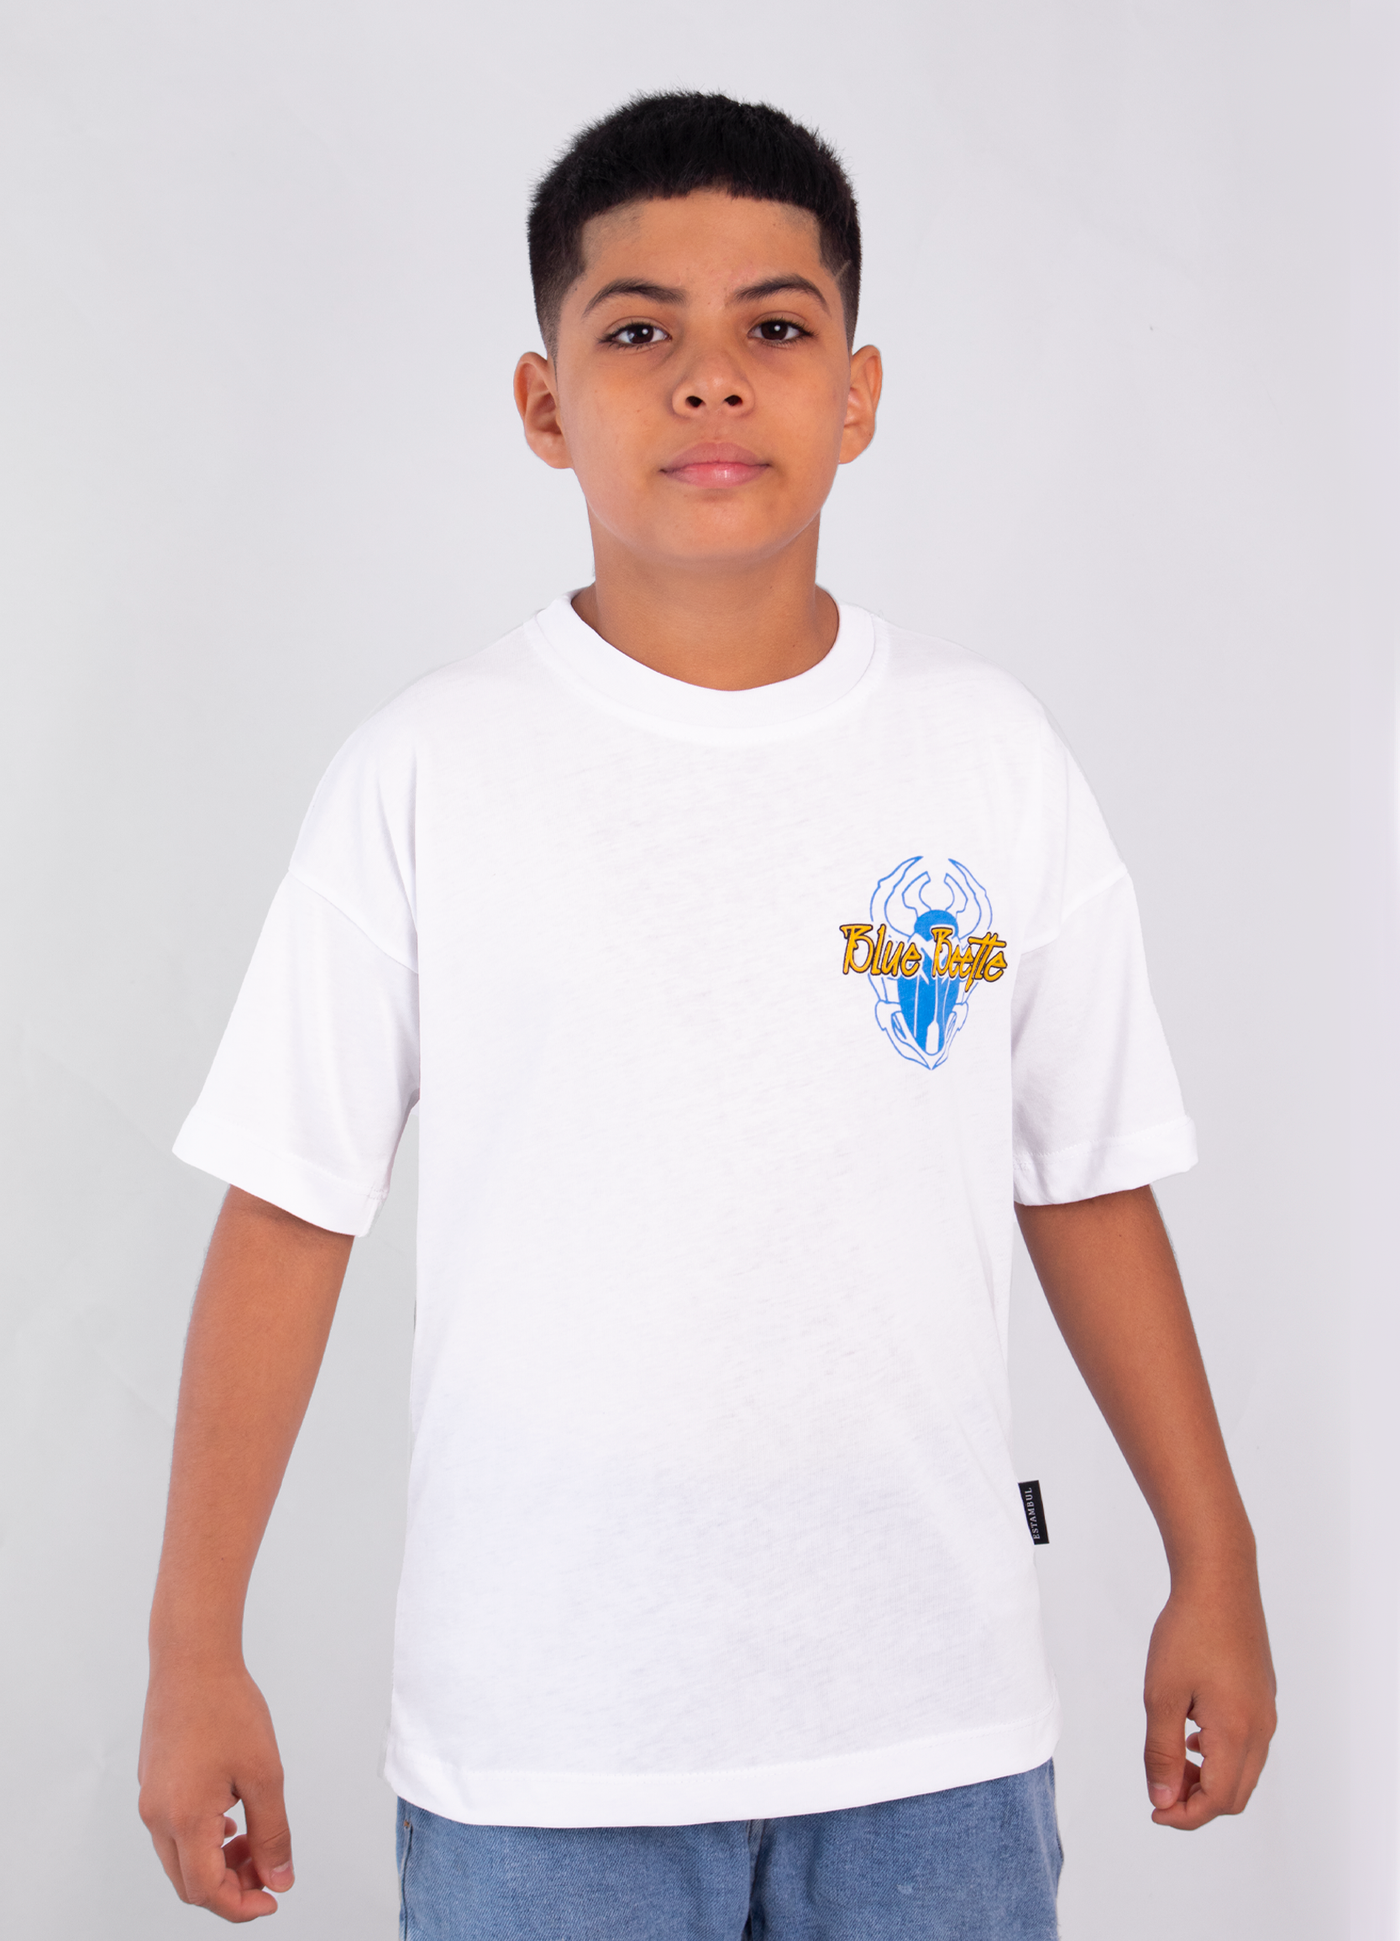 Camiseta niños OVERSIZE traje importación algodón camiseta JEANS 3-12 años